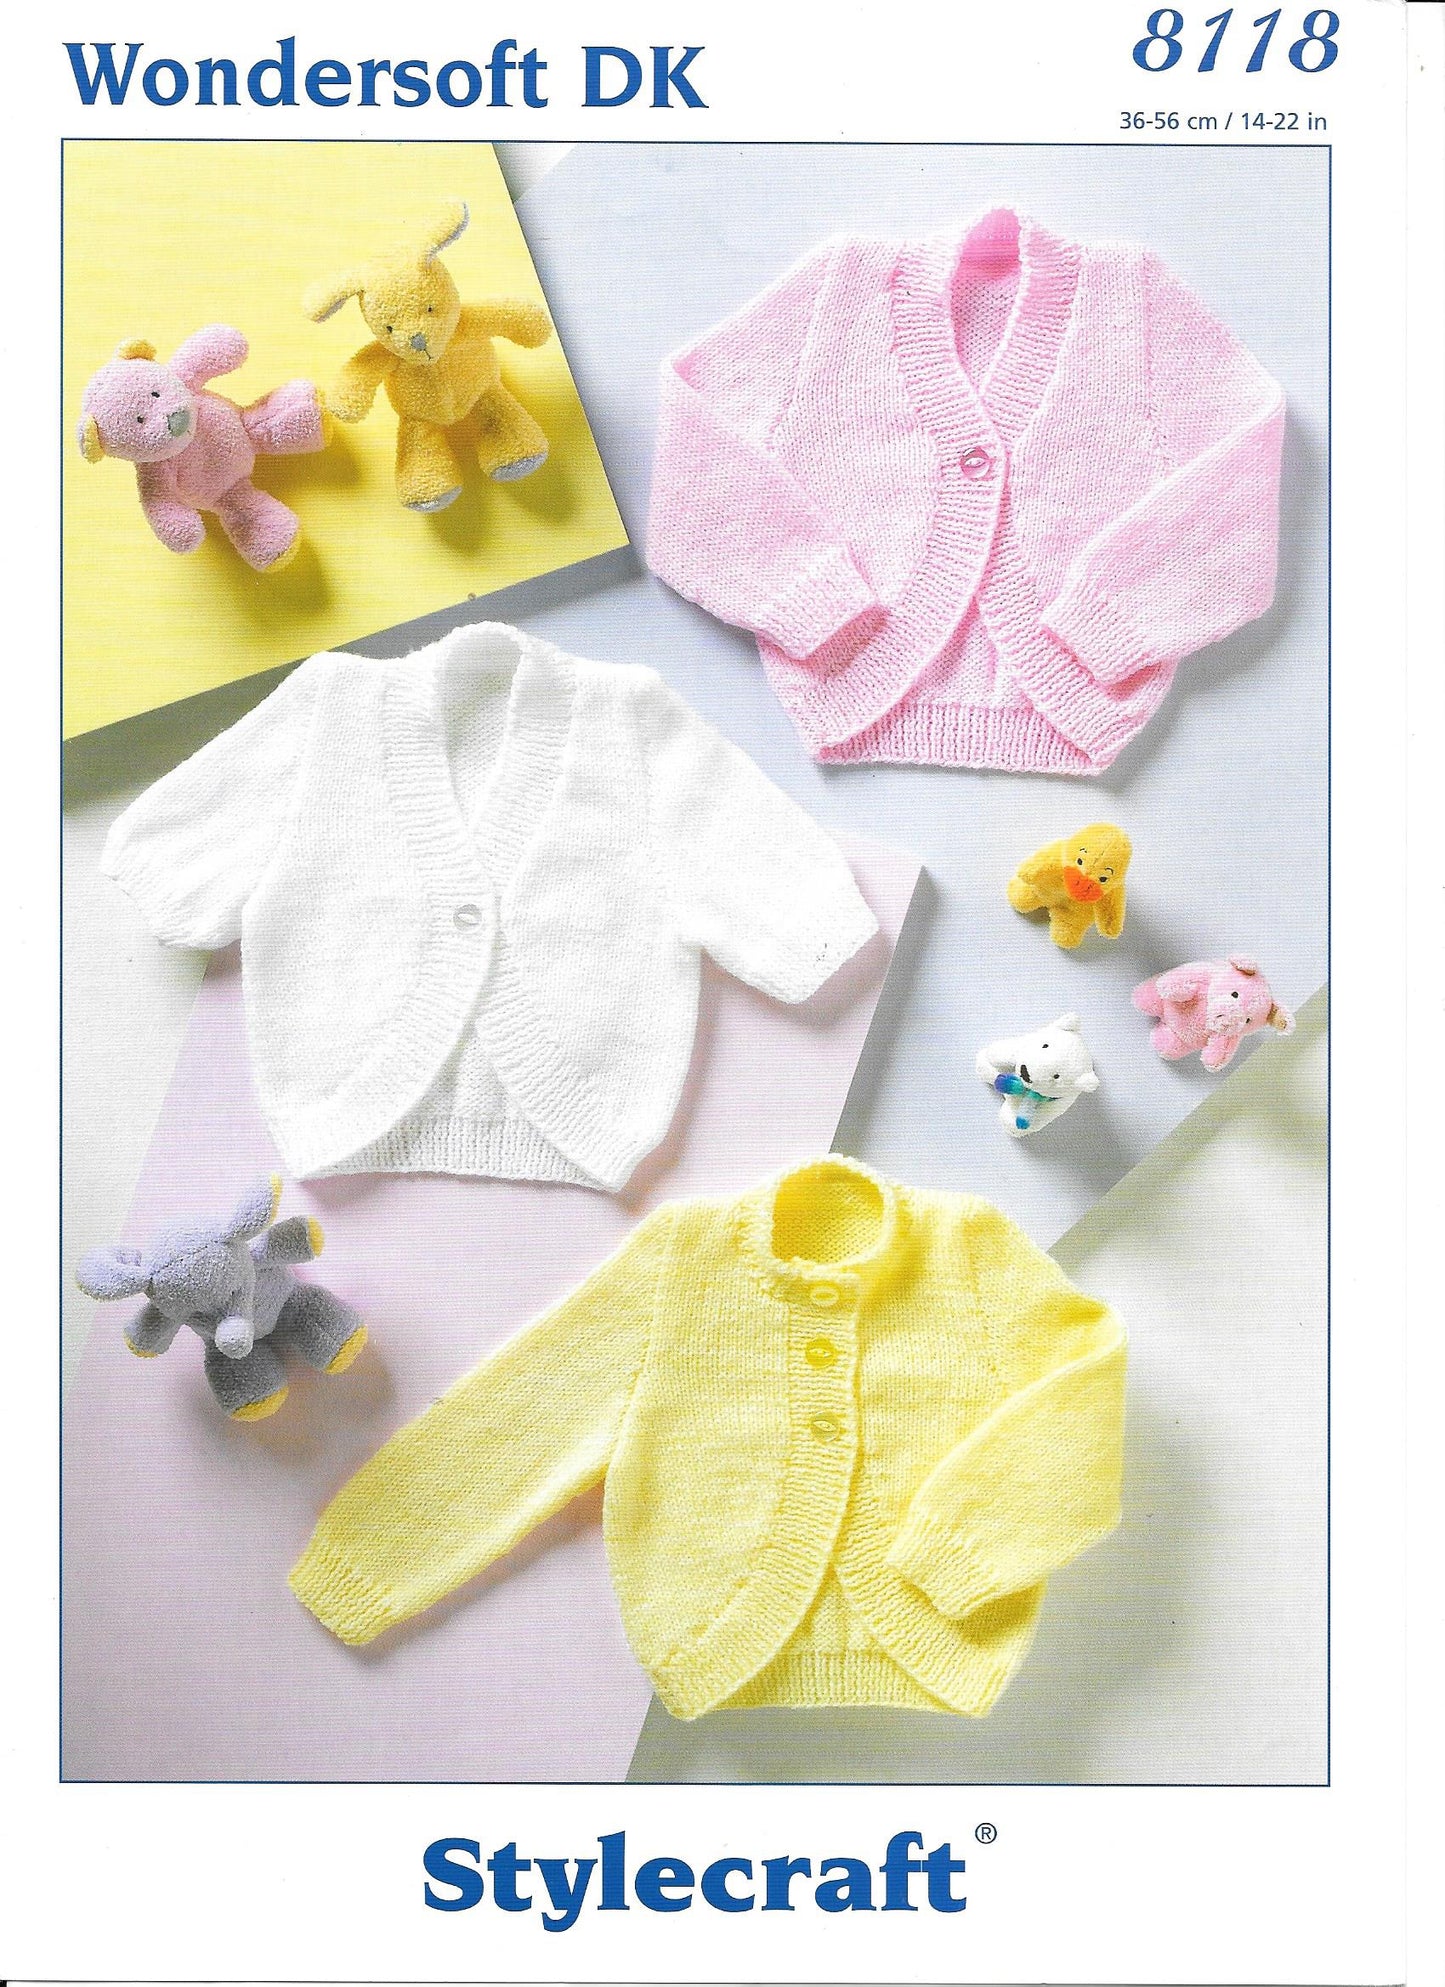 8118 Stylecraft Knitting Pattern. Child's Bolero DK. 14-22" chest